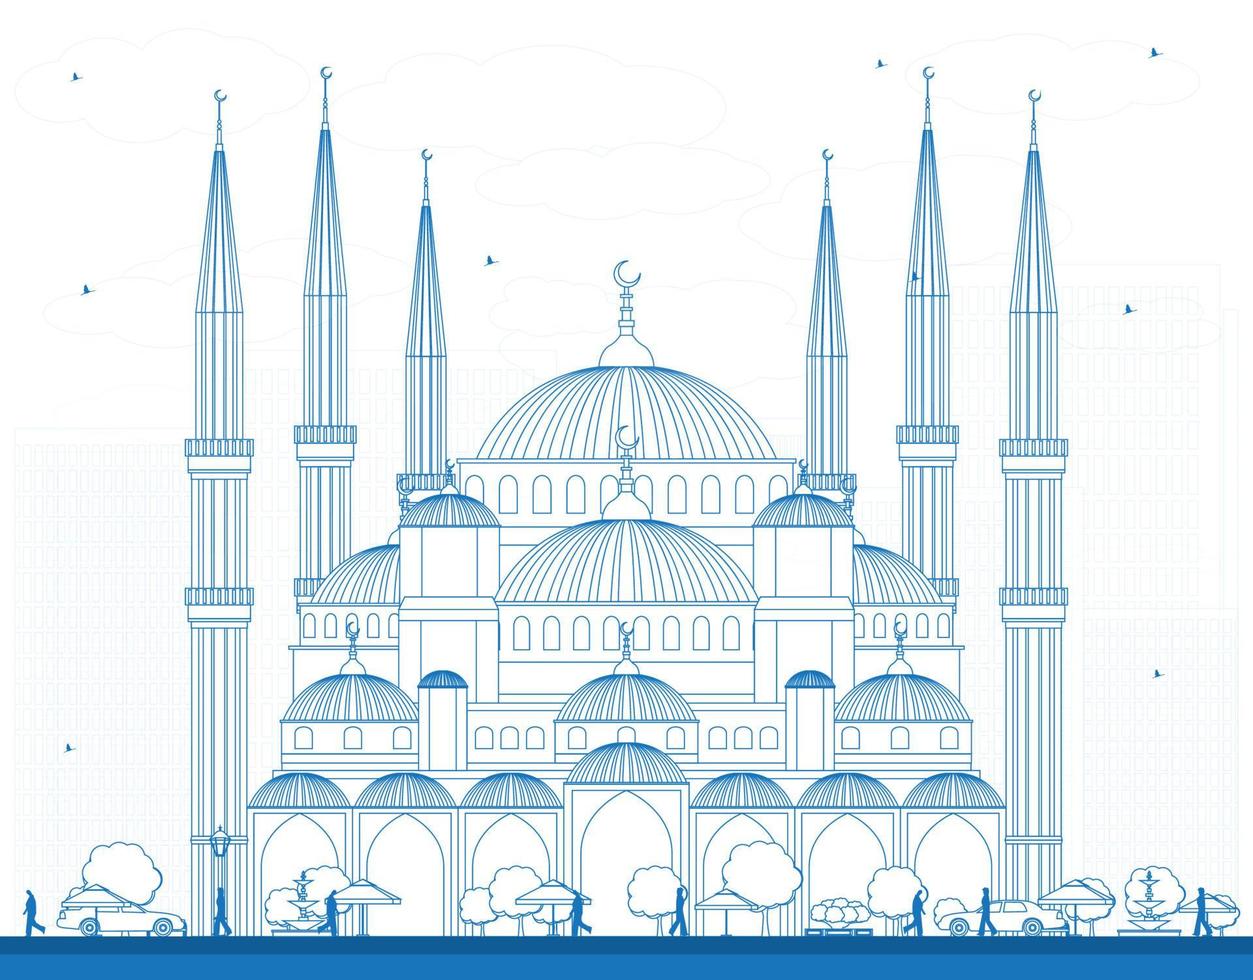 schets blauwe moskee in istanbul, turkije. vector